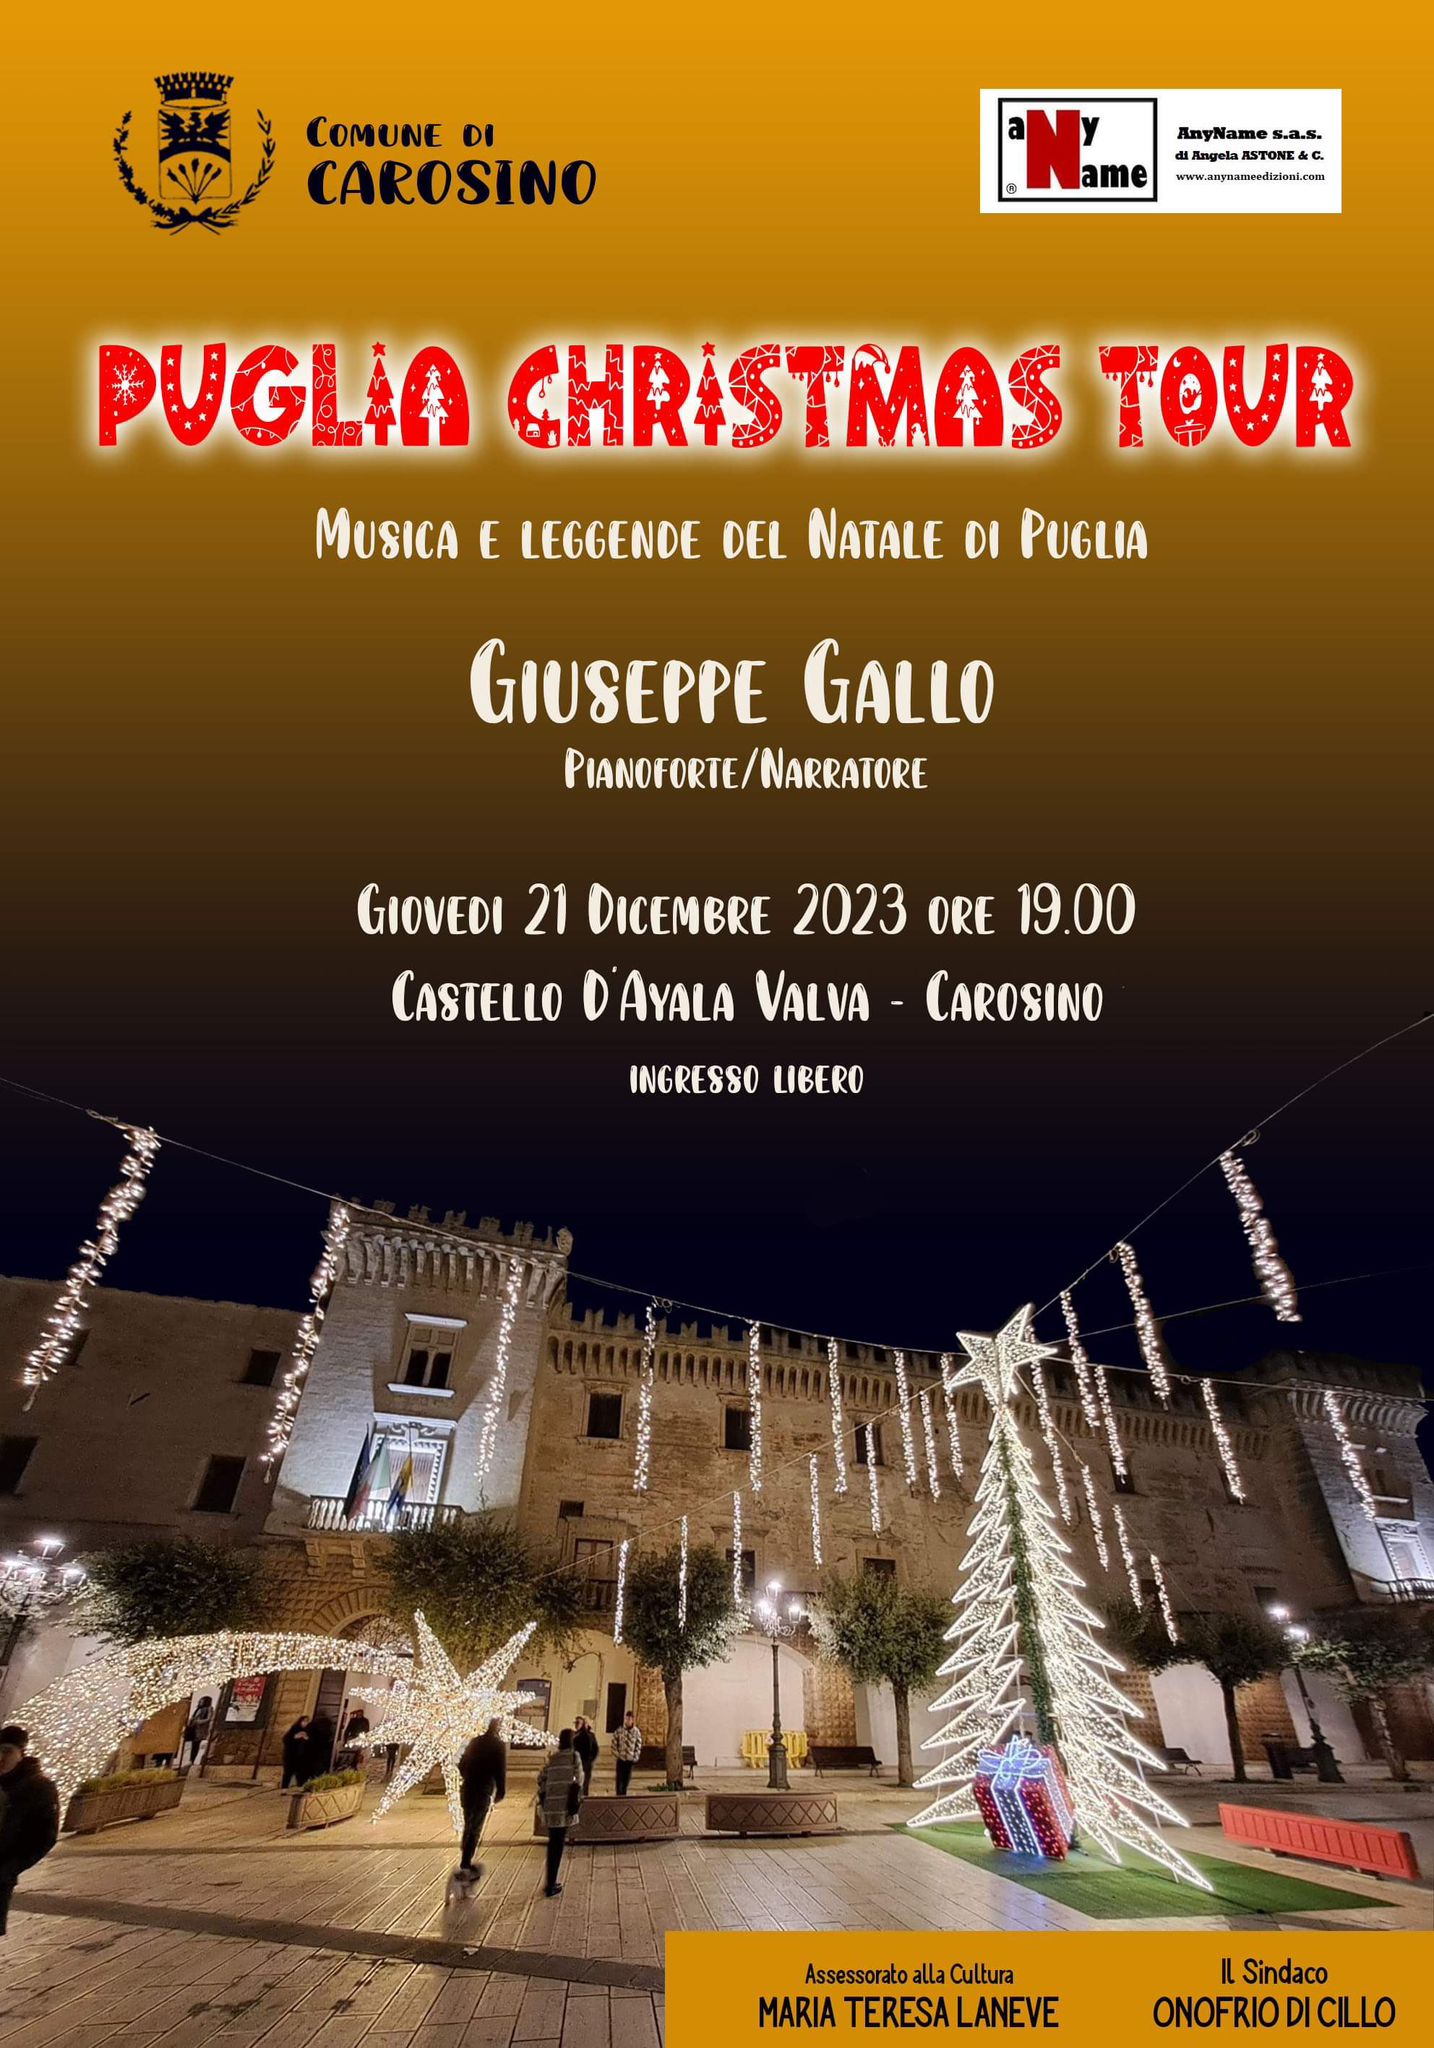 Puglia Christmas Tour il 21 dicembre fa tappa a Carosino